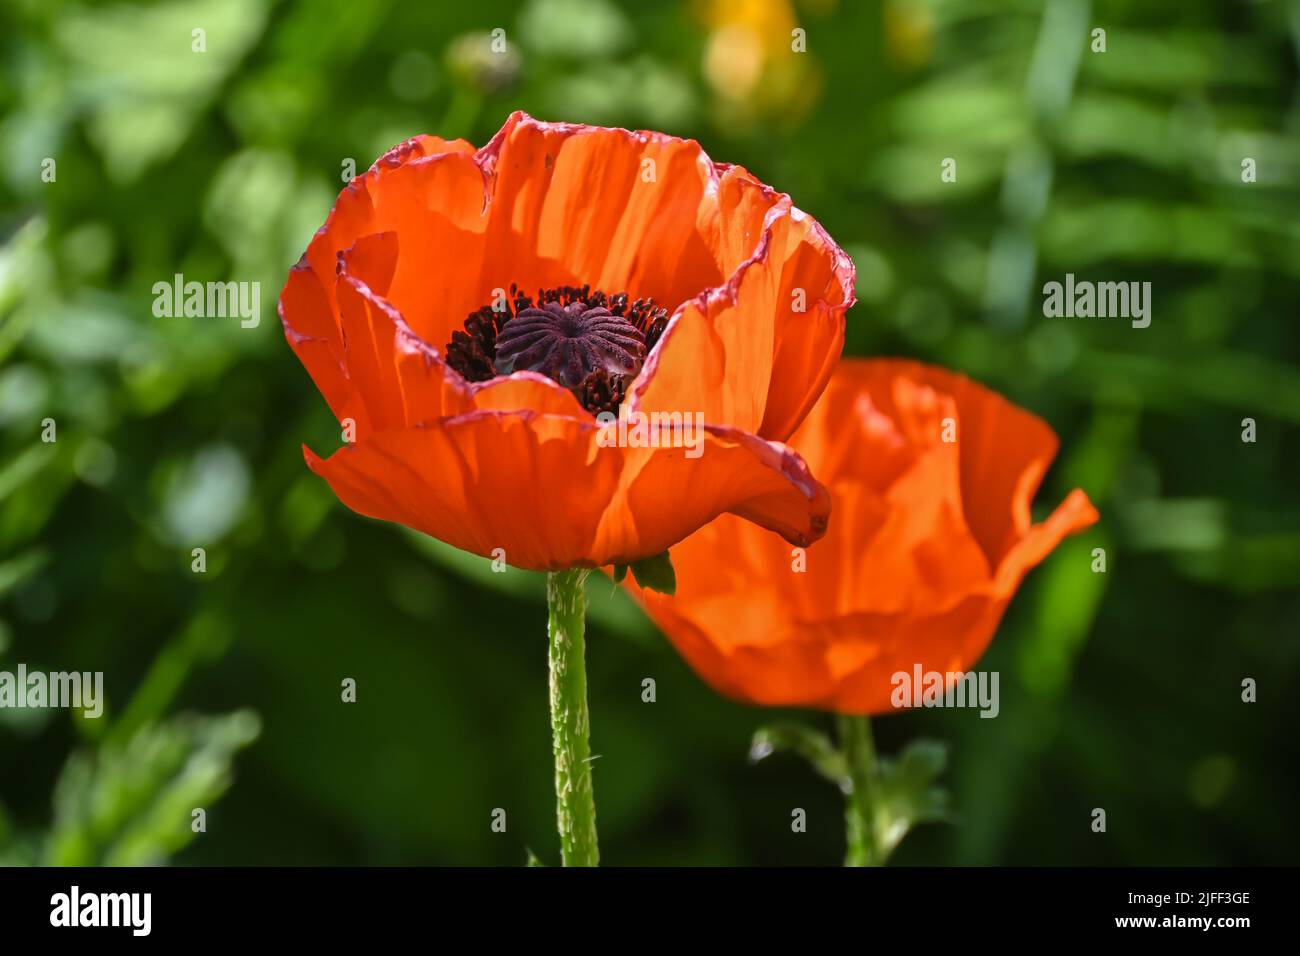 Amapolas escarlata. Amapola en flor en el jardín de verano. Foto de stock